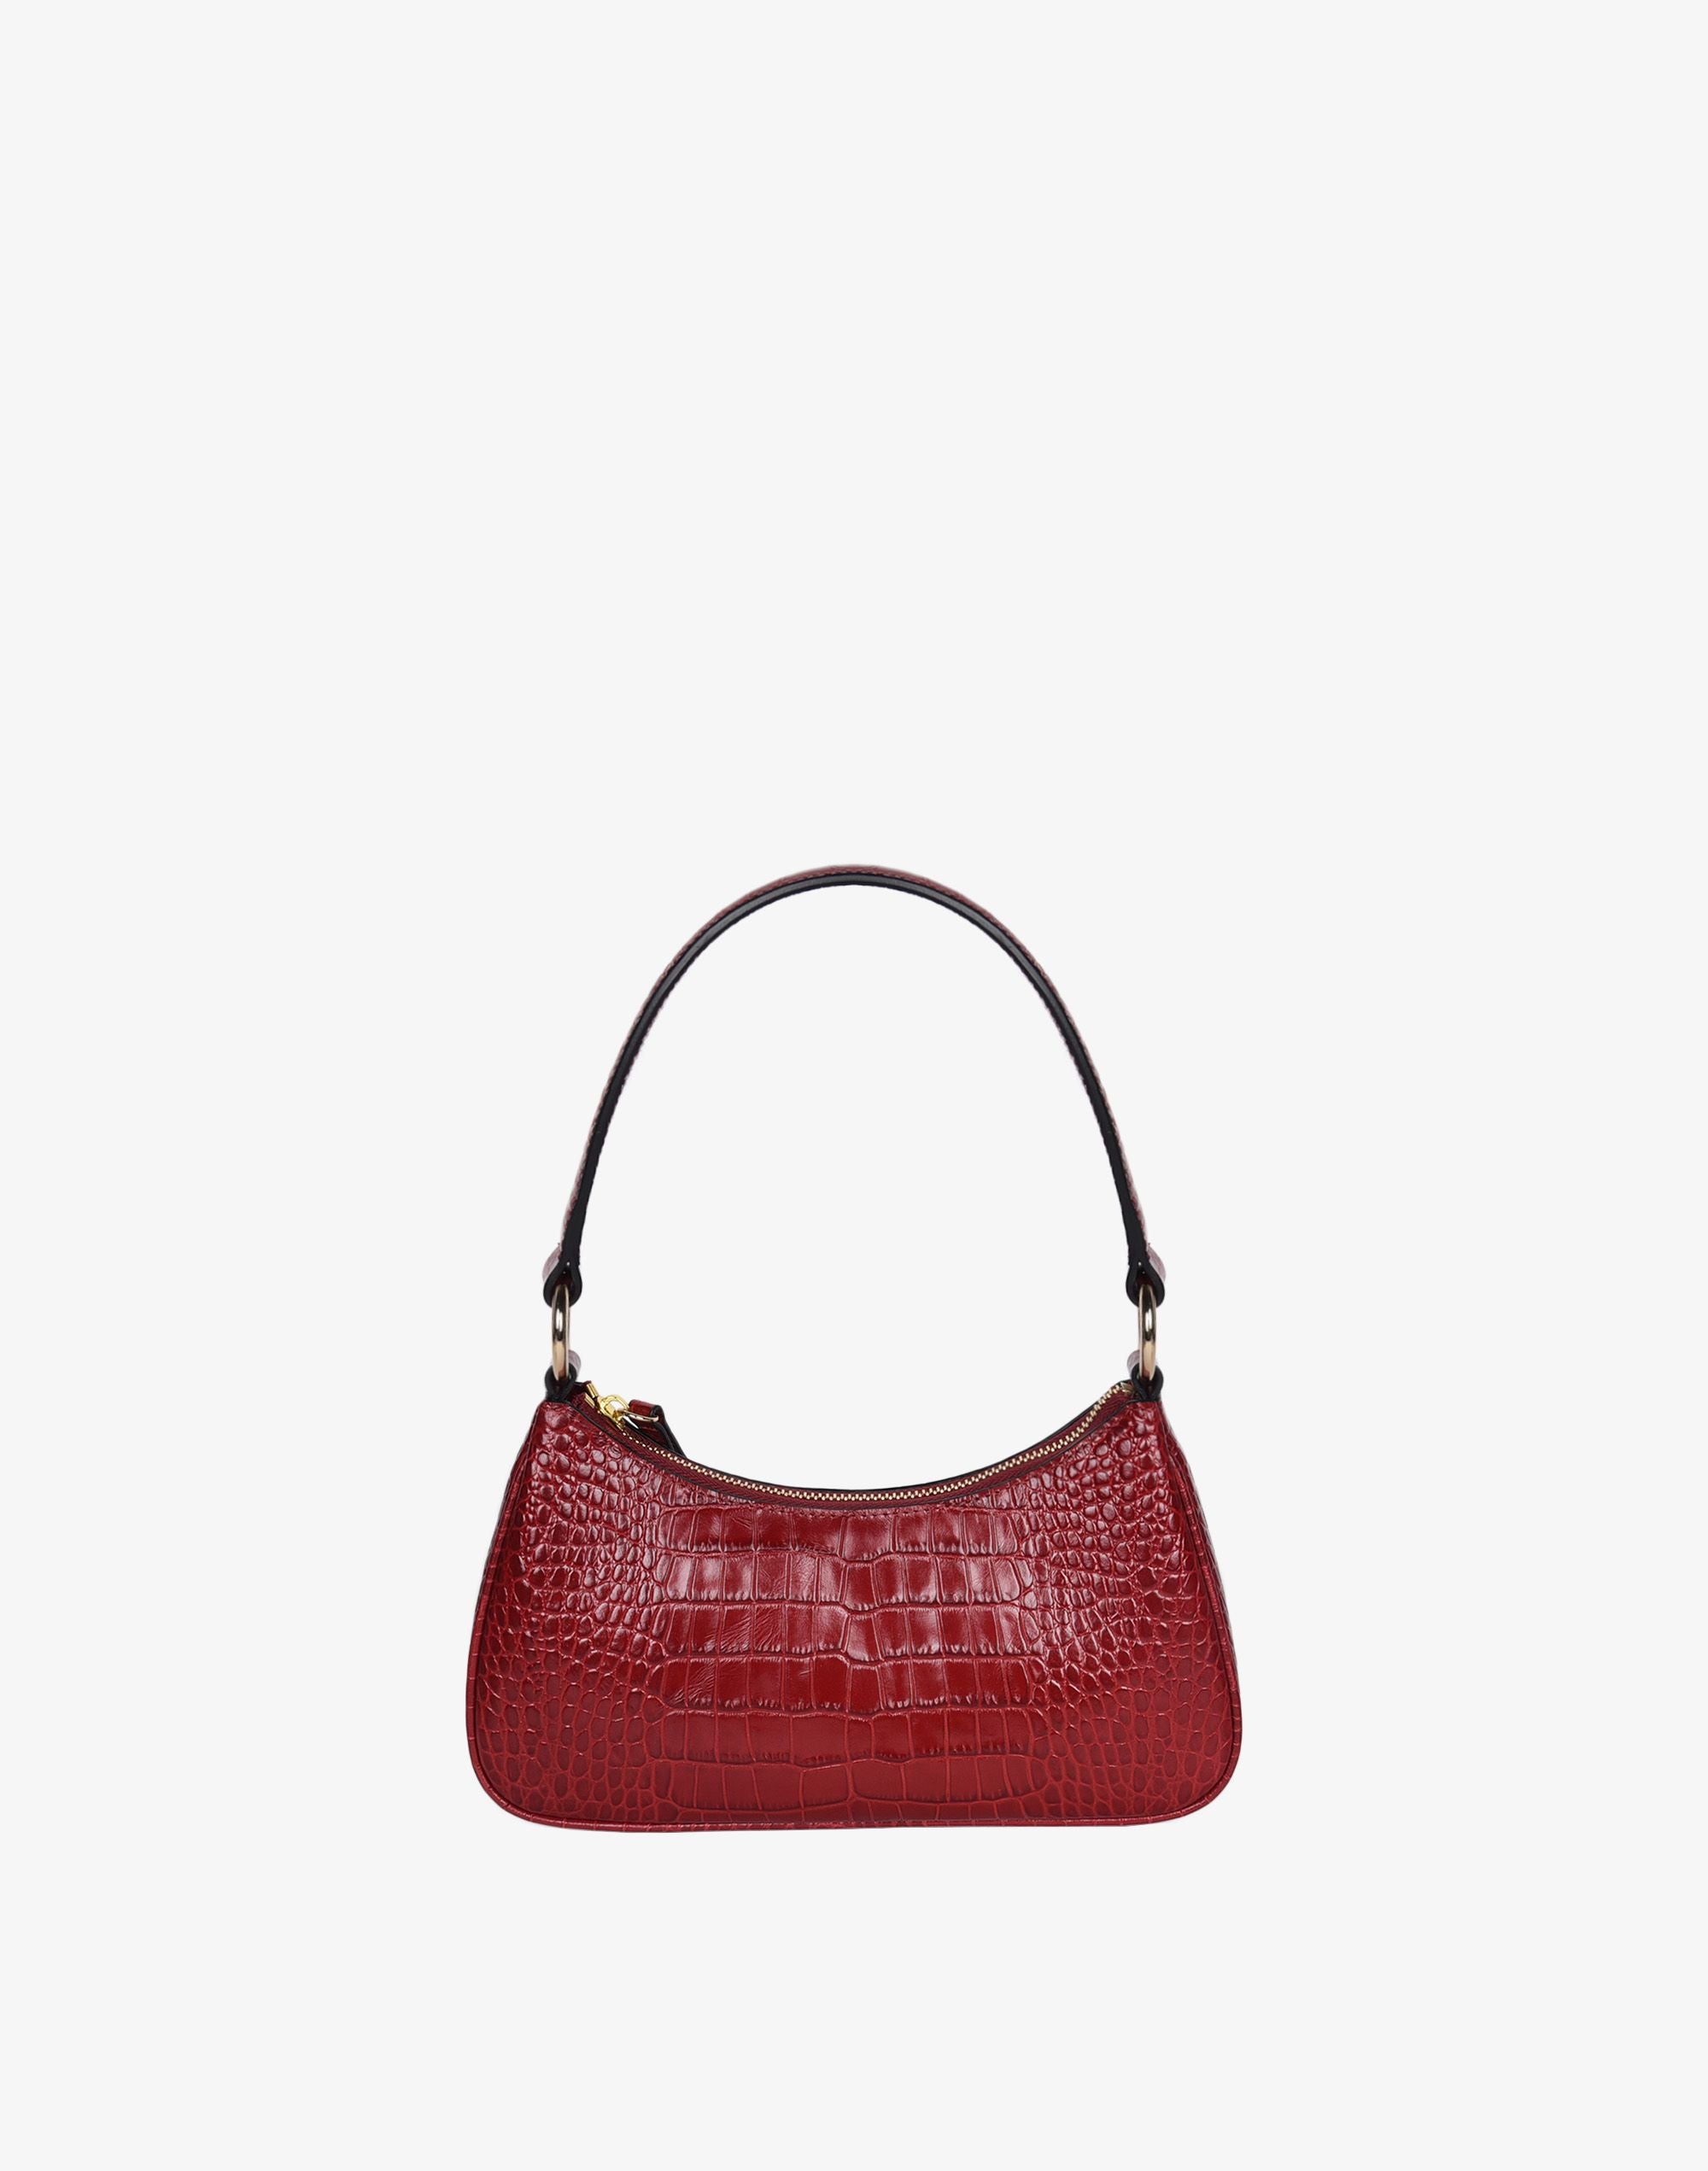 Small size Stylish Hand bag Shoulder Purse/ Unique party purse/Money Bag  Lather Bag for Women's